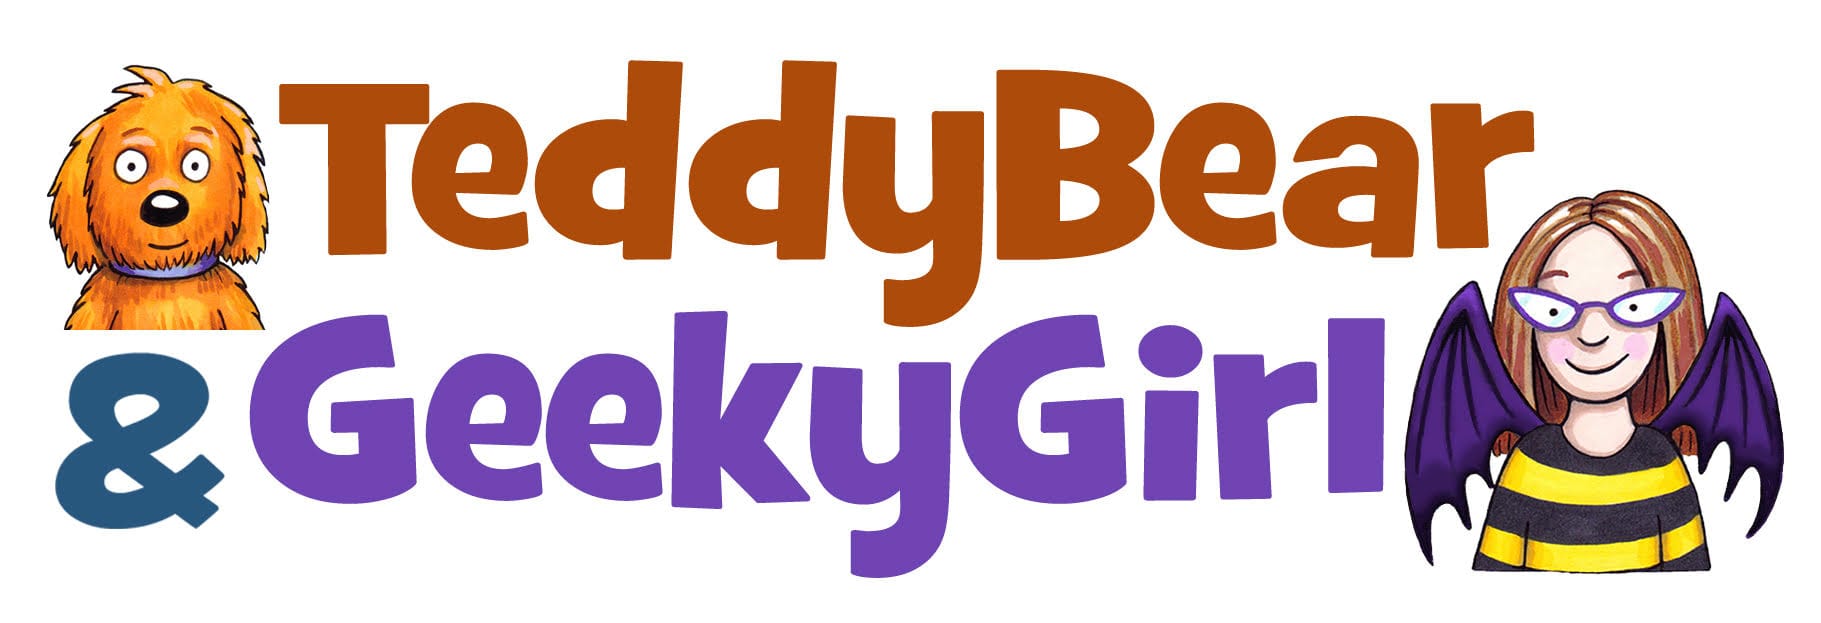 TeddyBear & GeekyGirl